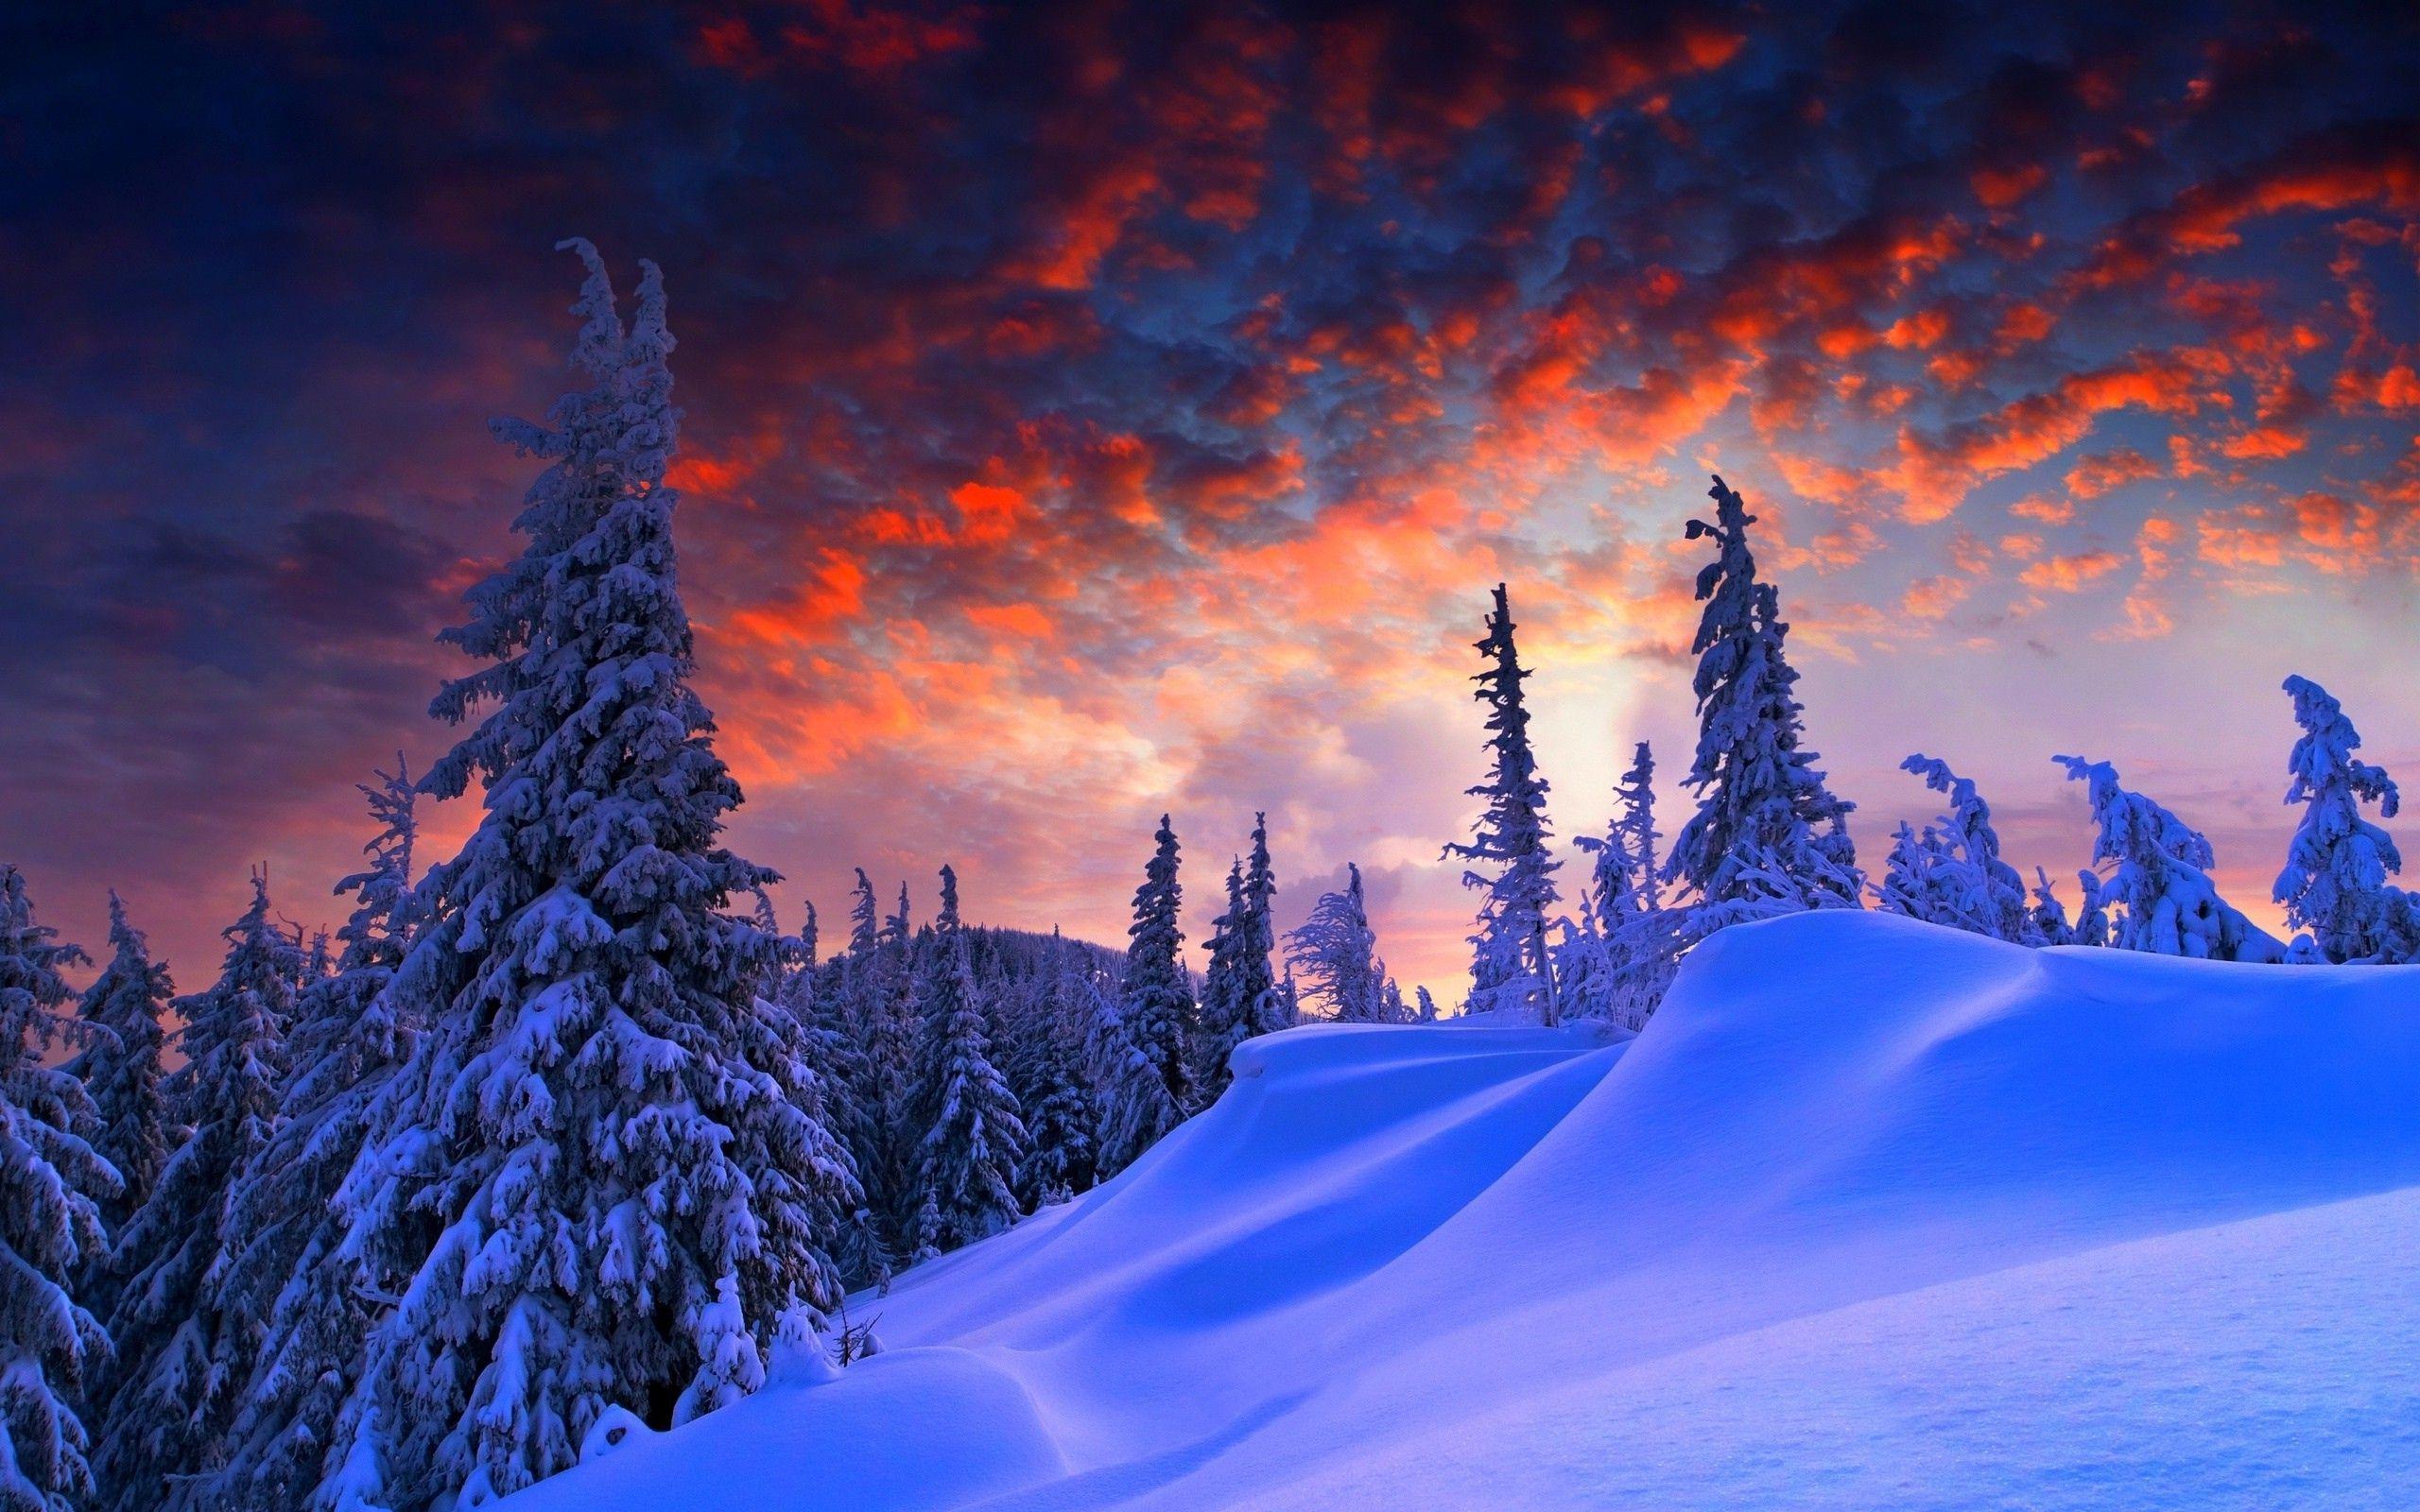 Snow Landscape Wallpapers - Top Free Snow Landscape Backgrounds